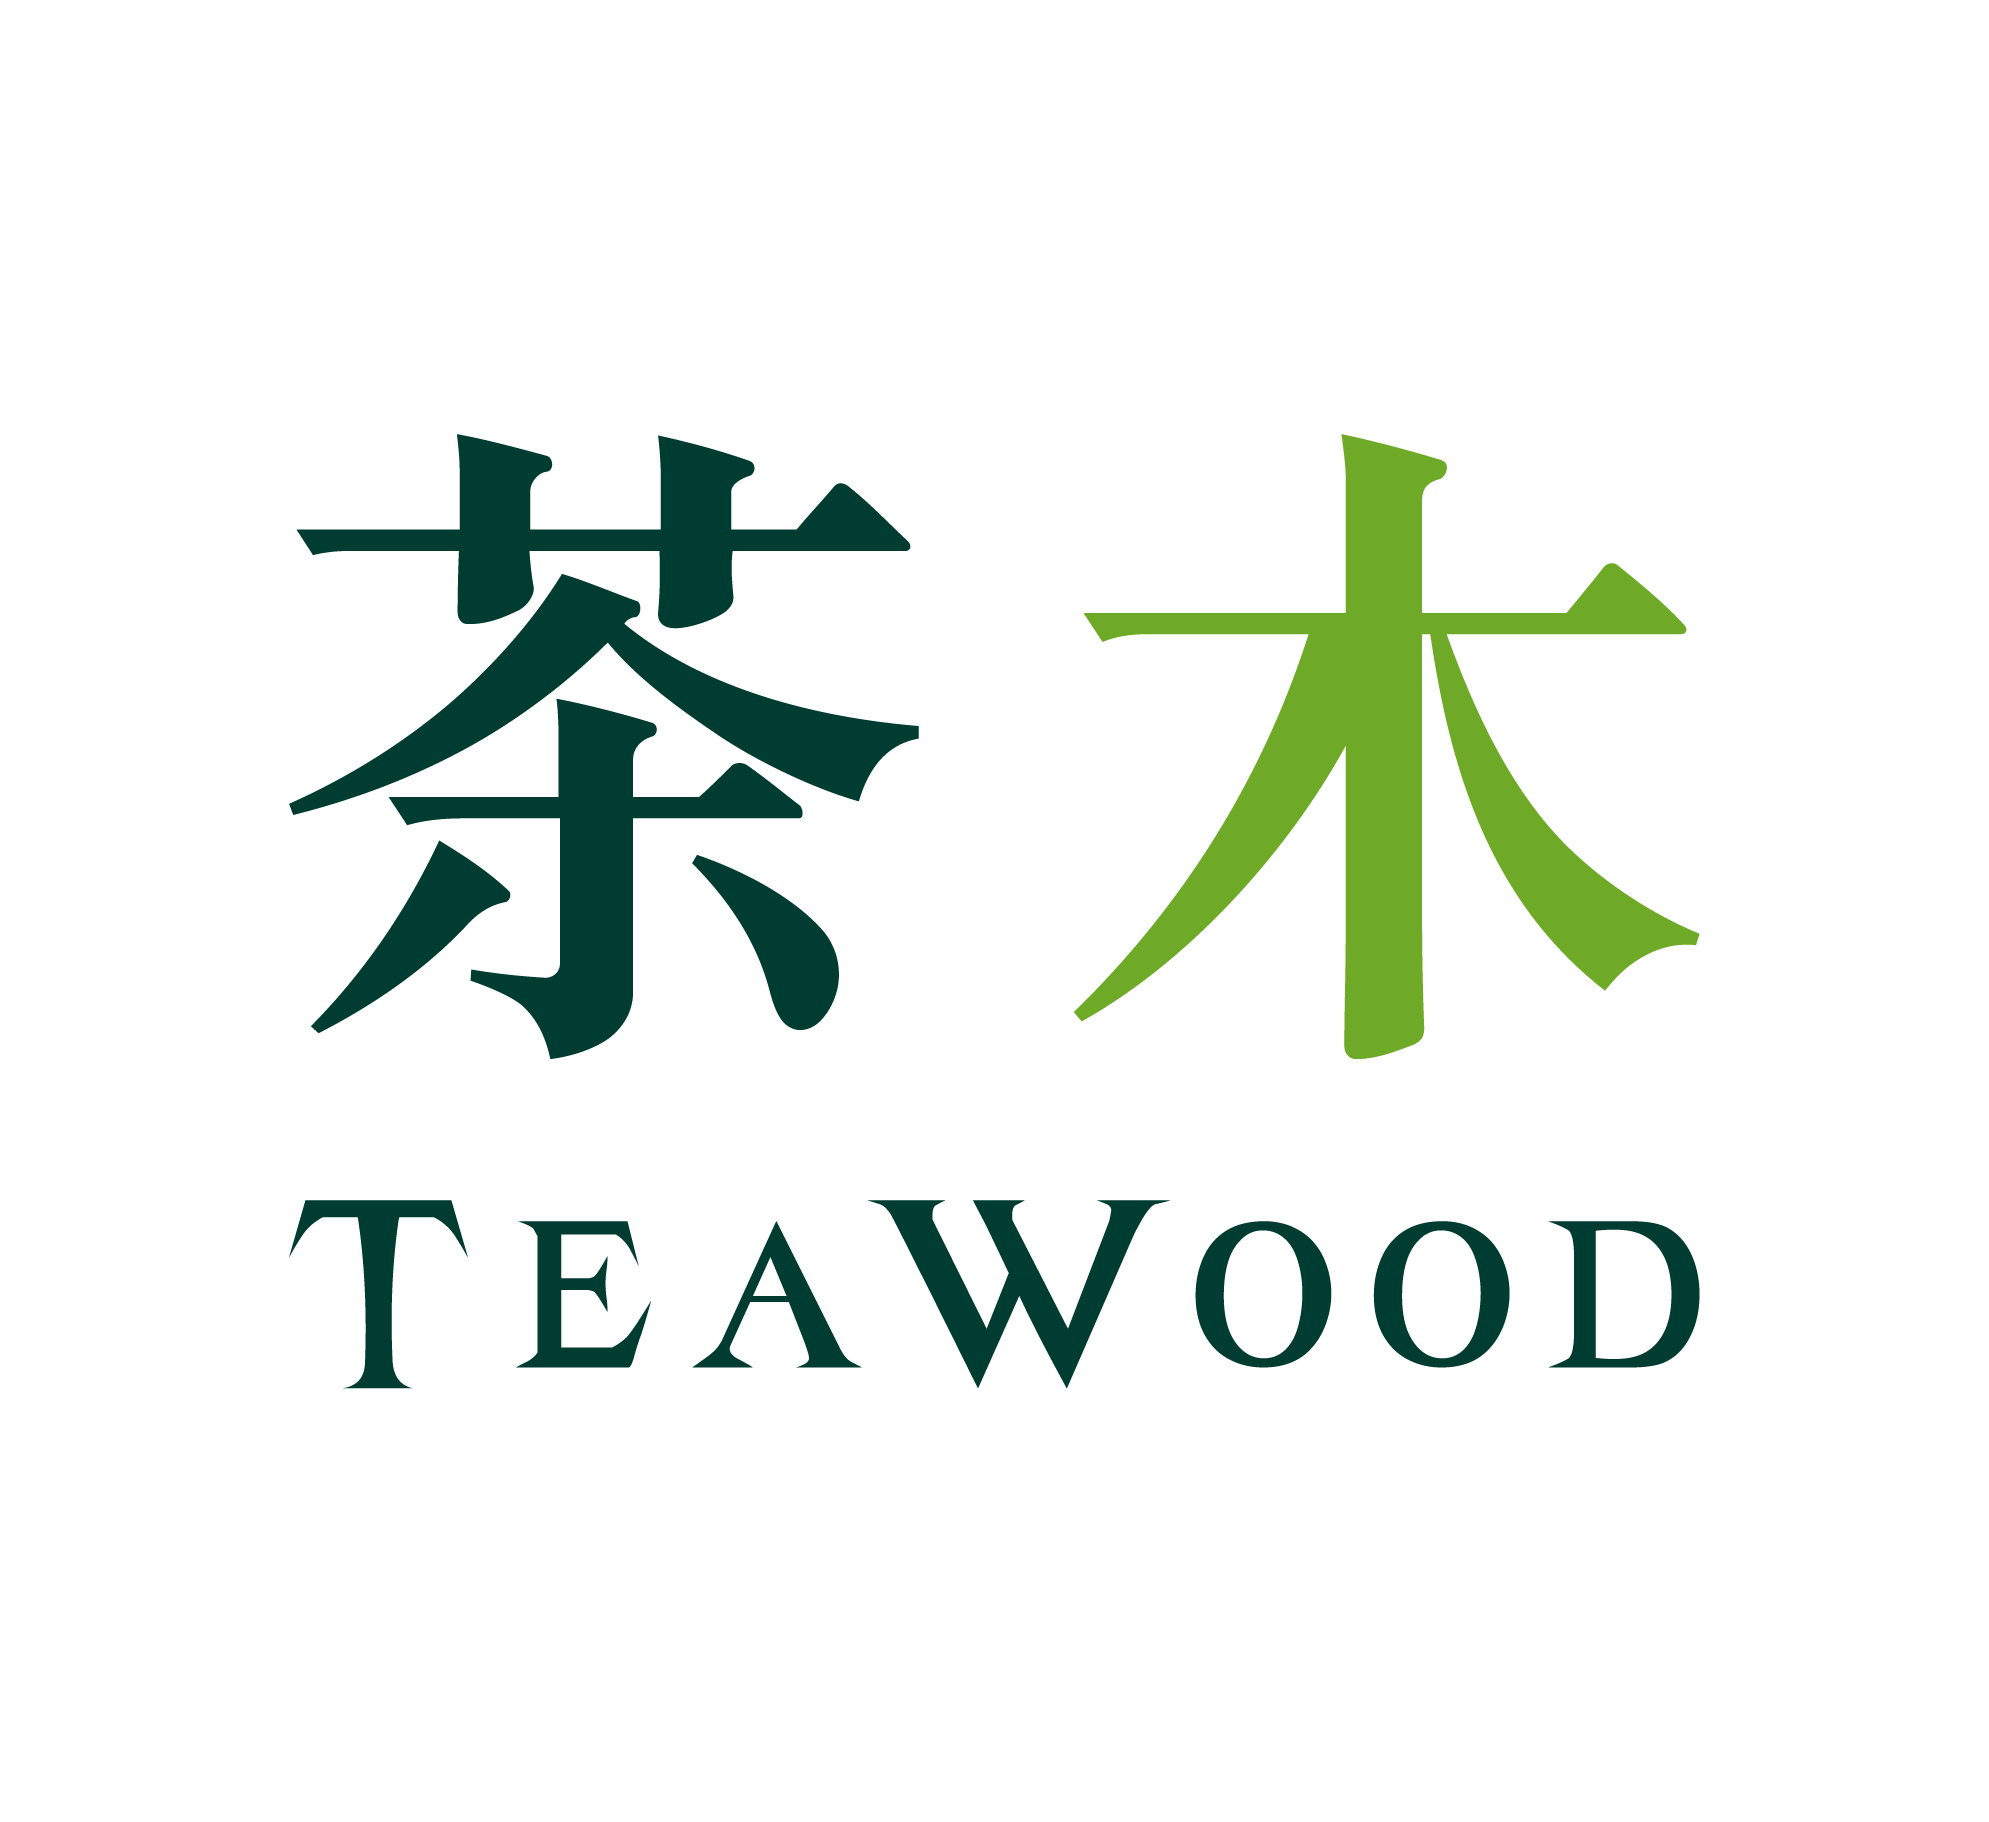 TeaWood 茶木 台式休閒餐廳 (即將開幕)